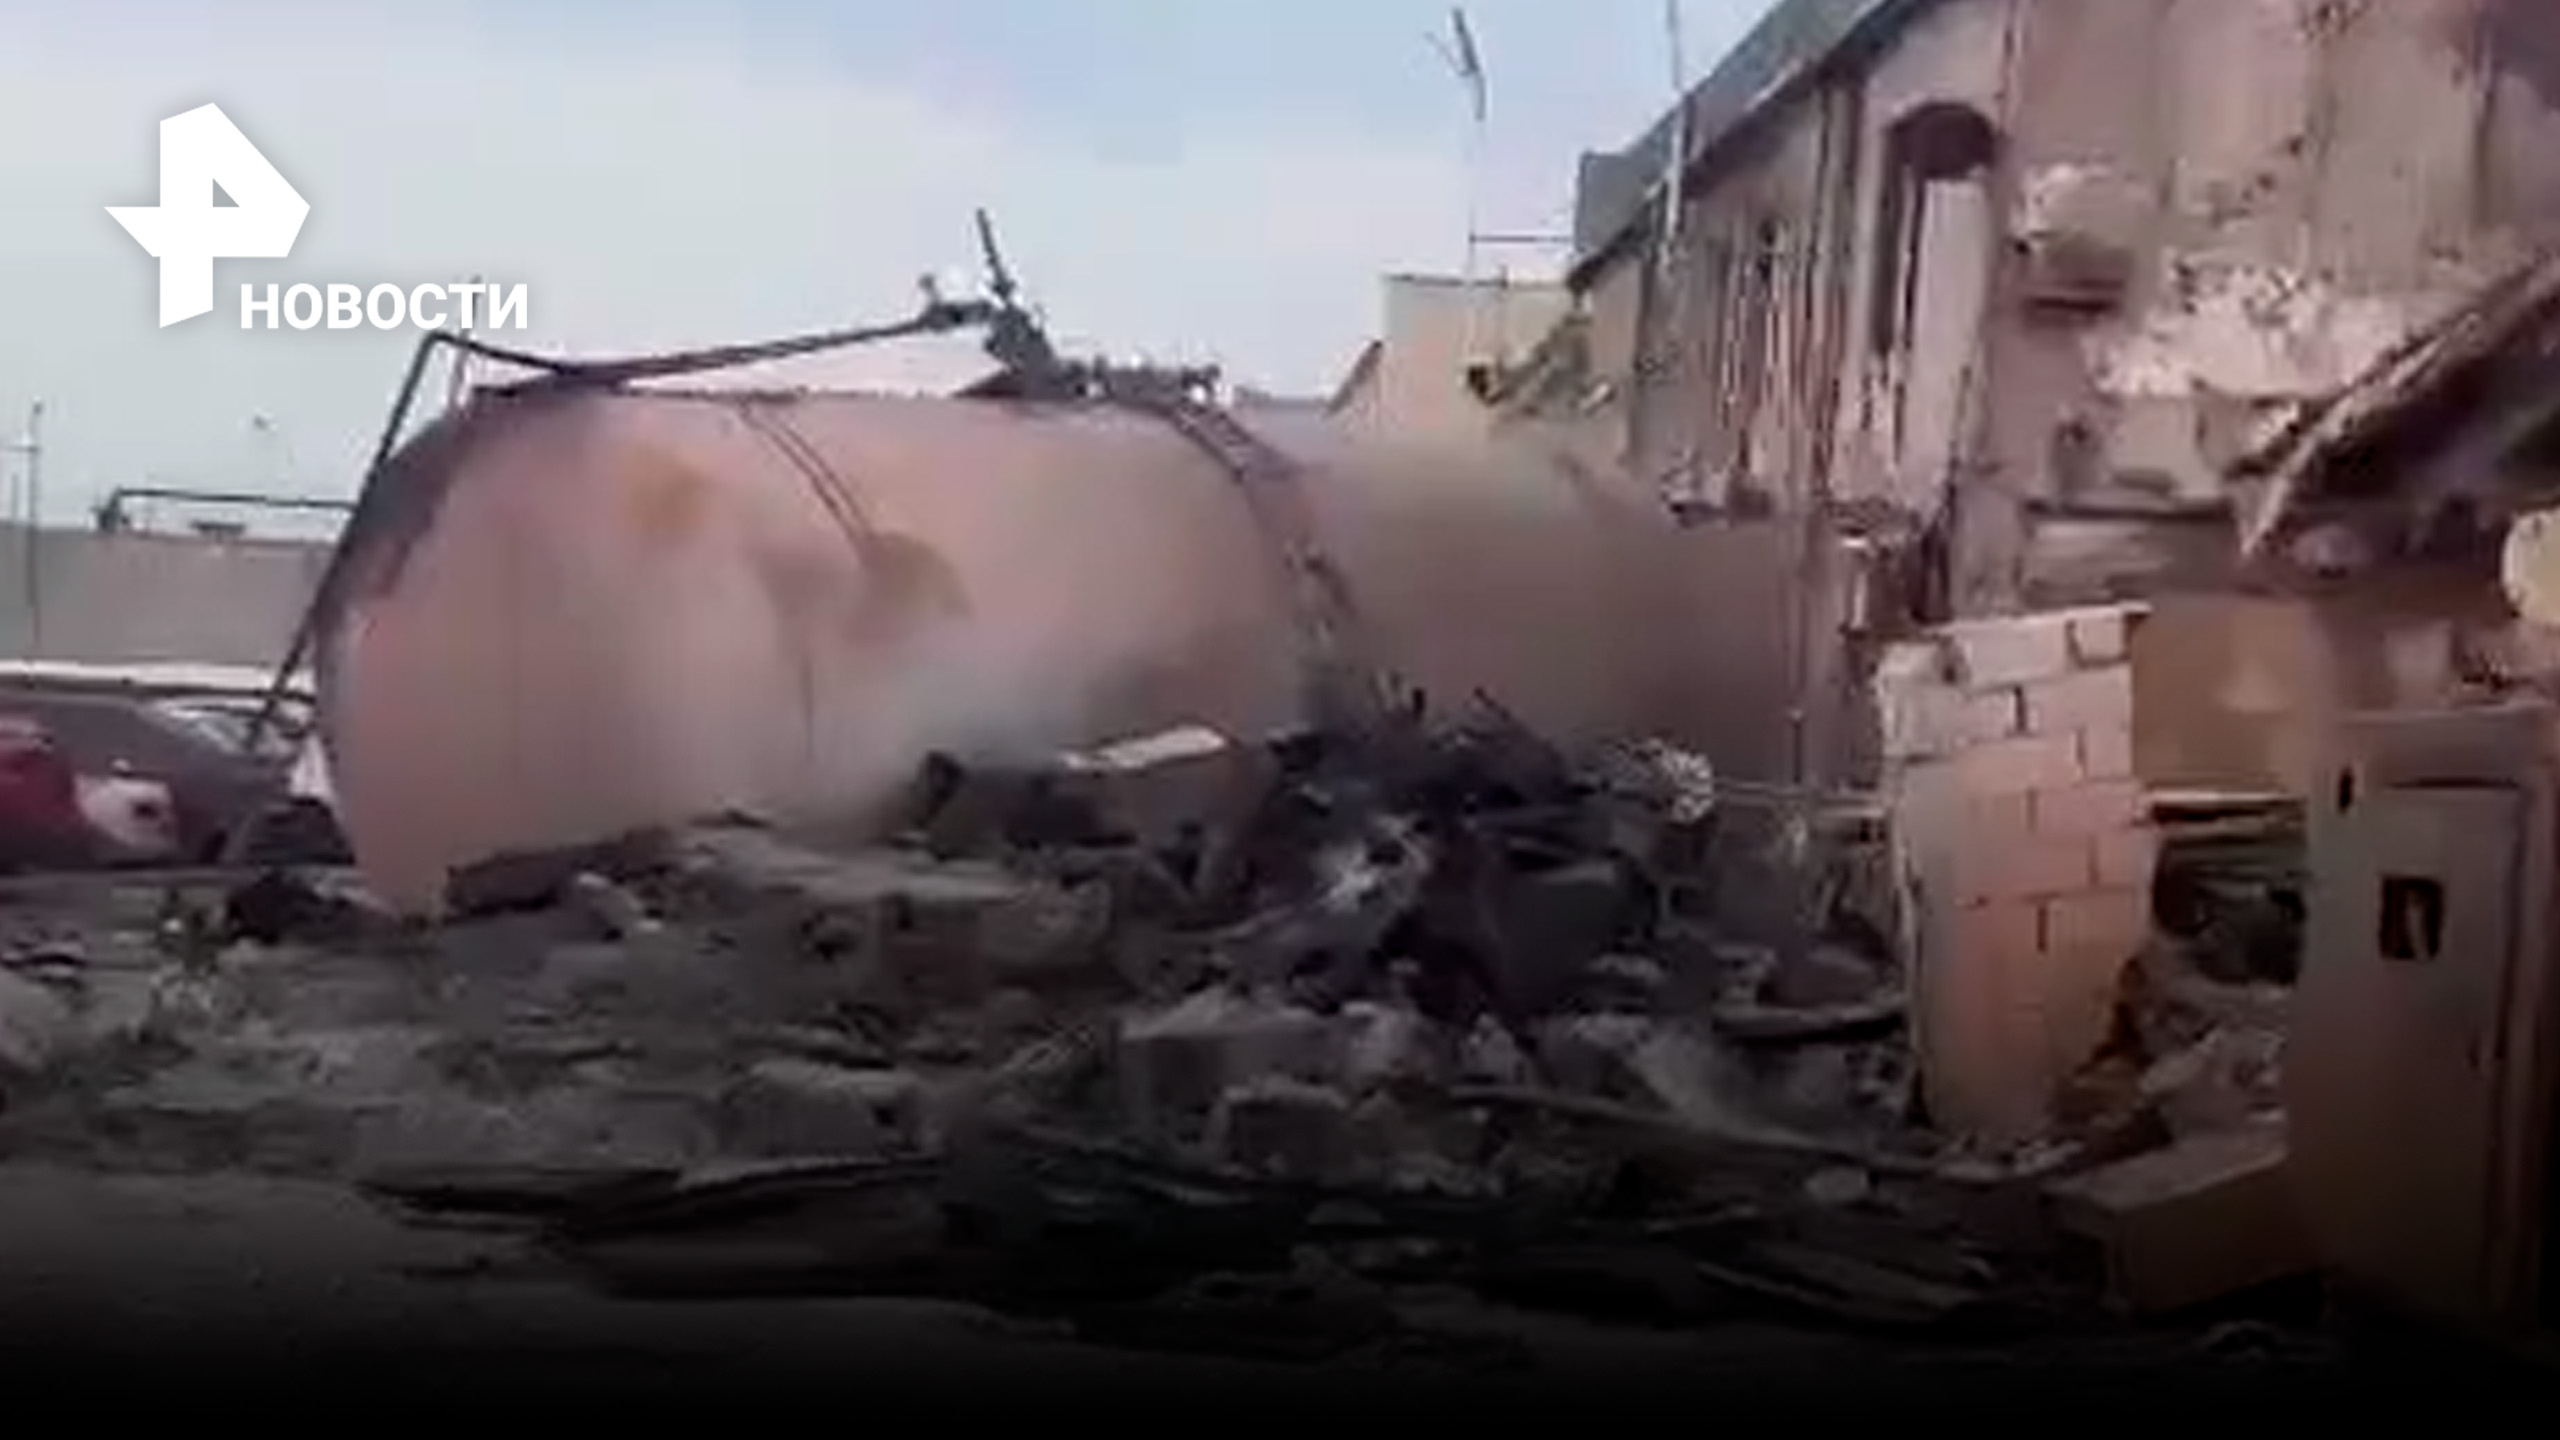 Выжженные руины, дым и пепел: последствия взрыва на АЗС в Махачкале - взгляд с места событий / РЕН